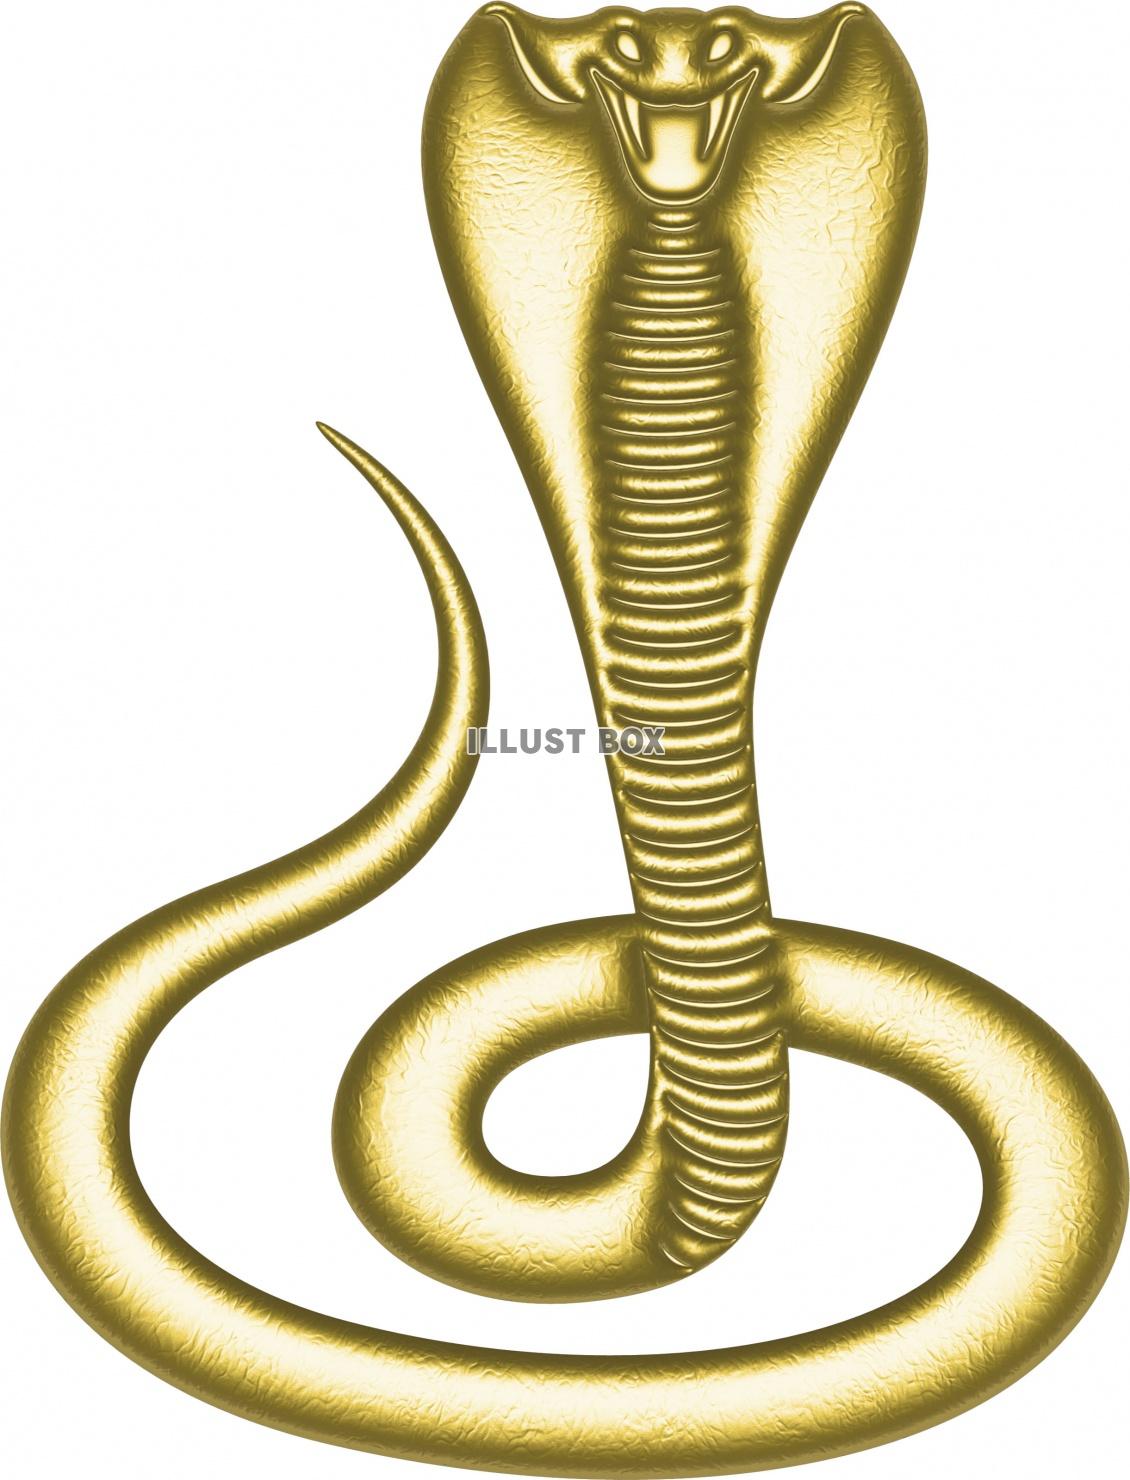 無料イラスト 金色に輝くゴージャスな毒蛇 コブラ